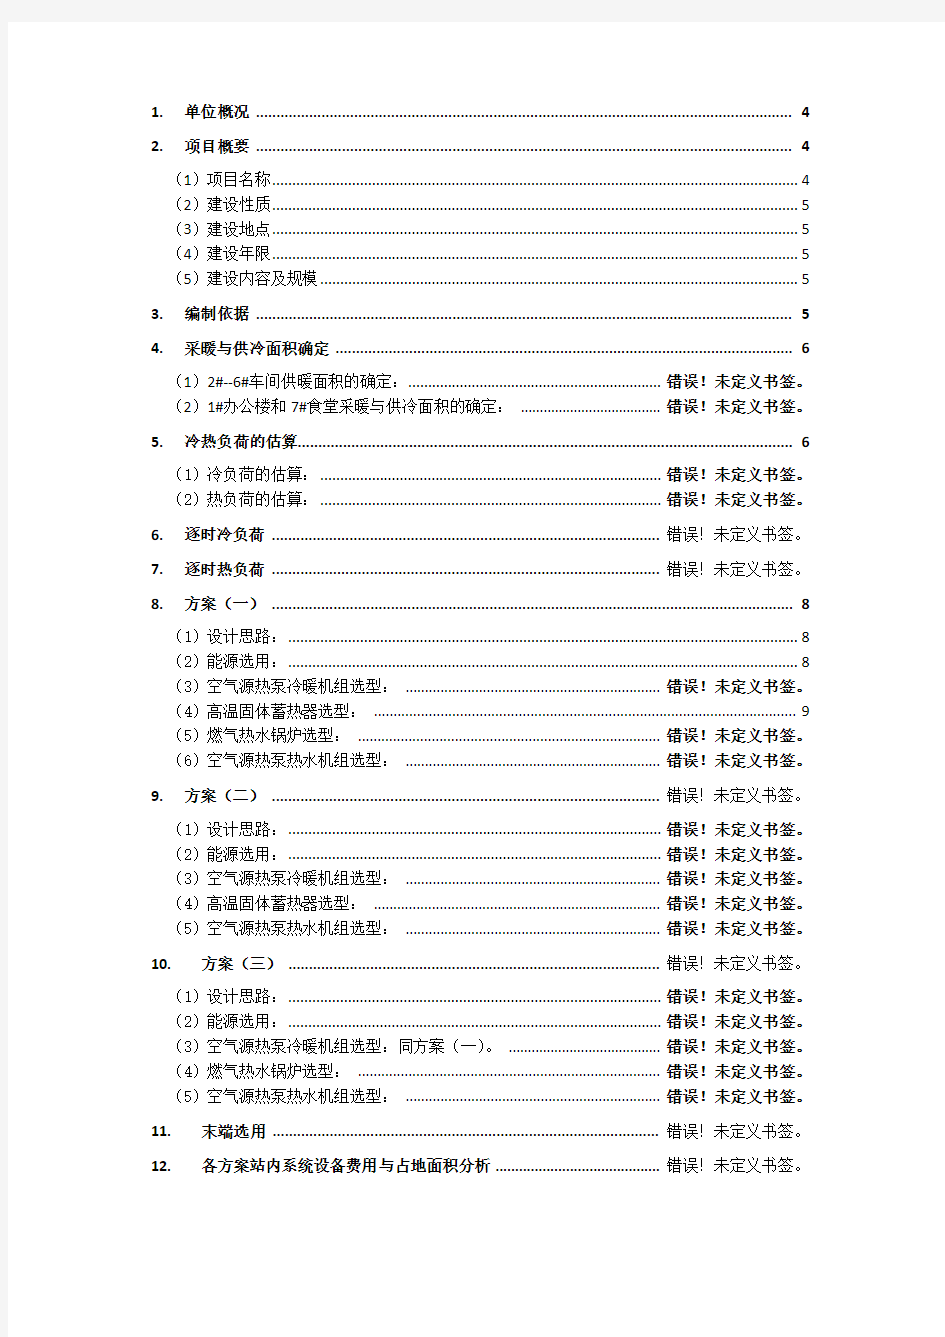 蒙阴一中供暖改造方案比选(2015.5.29)